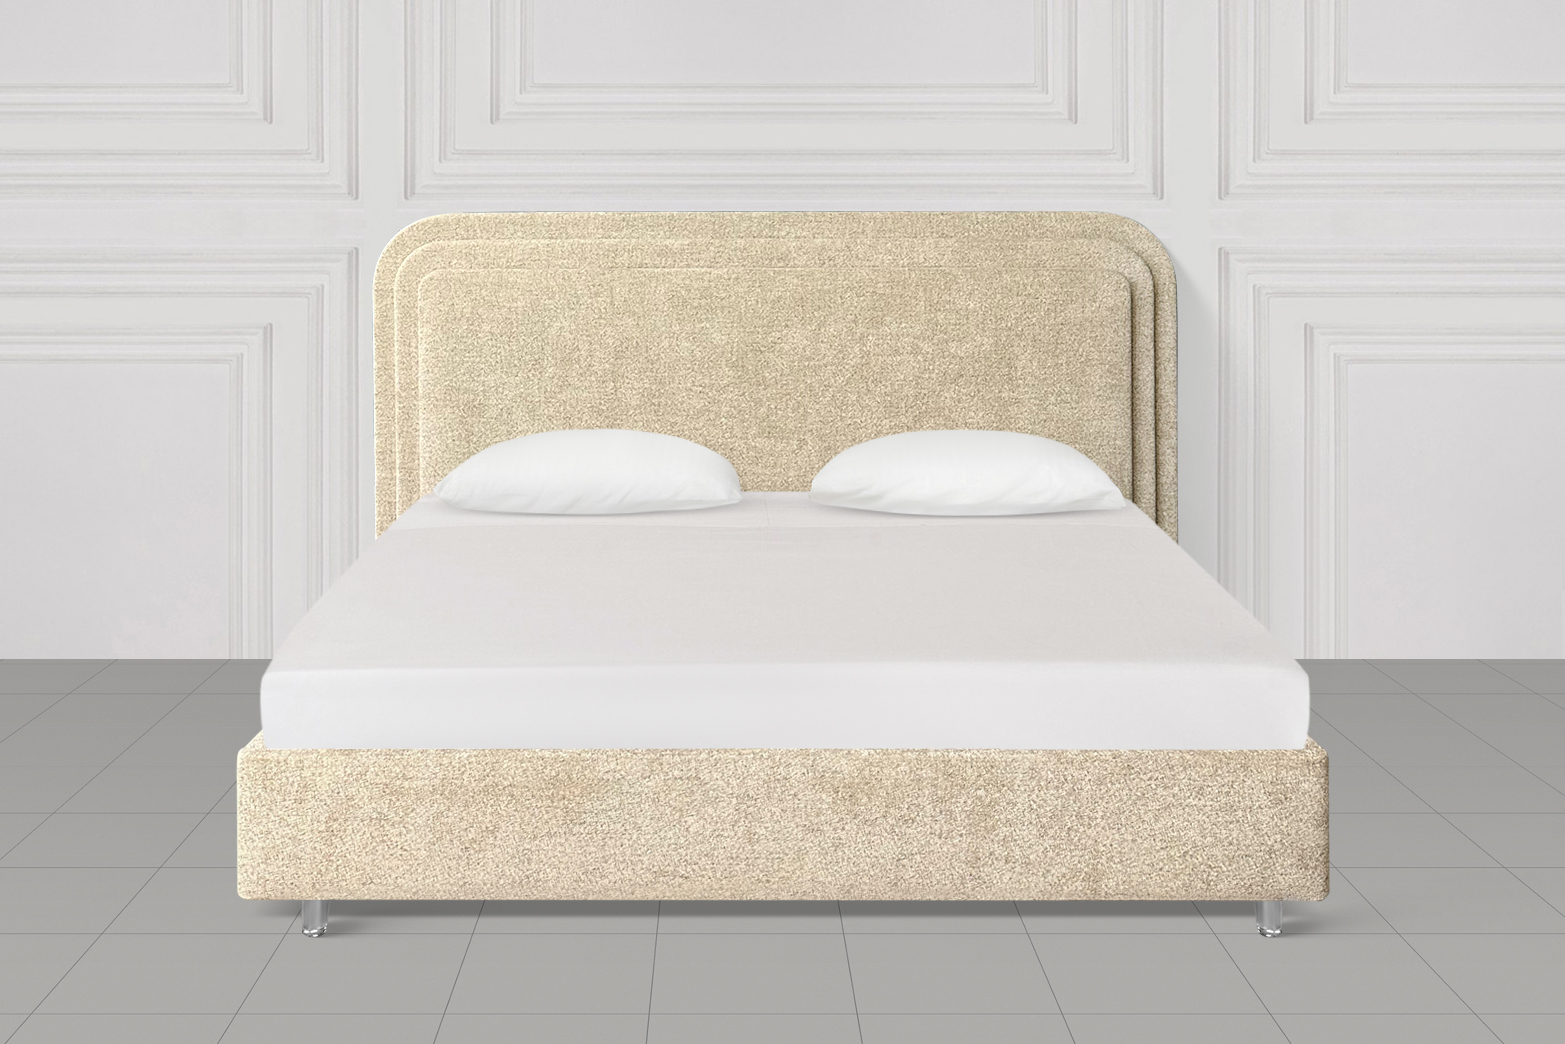  Кровать 3-Soft